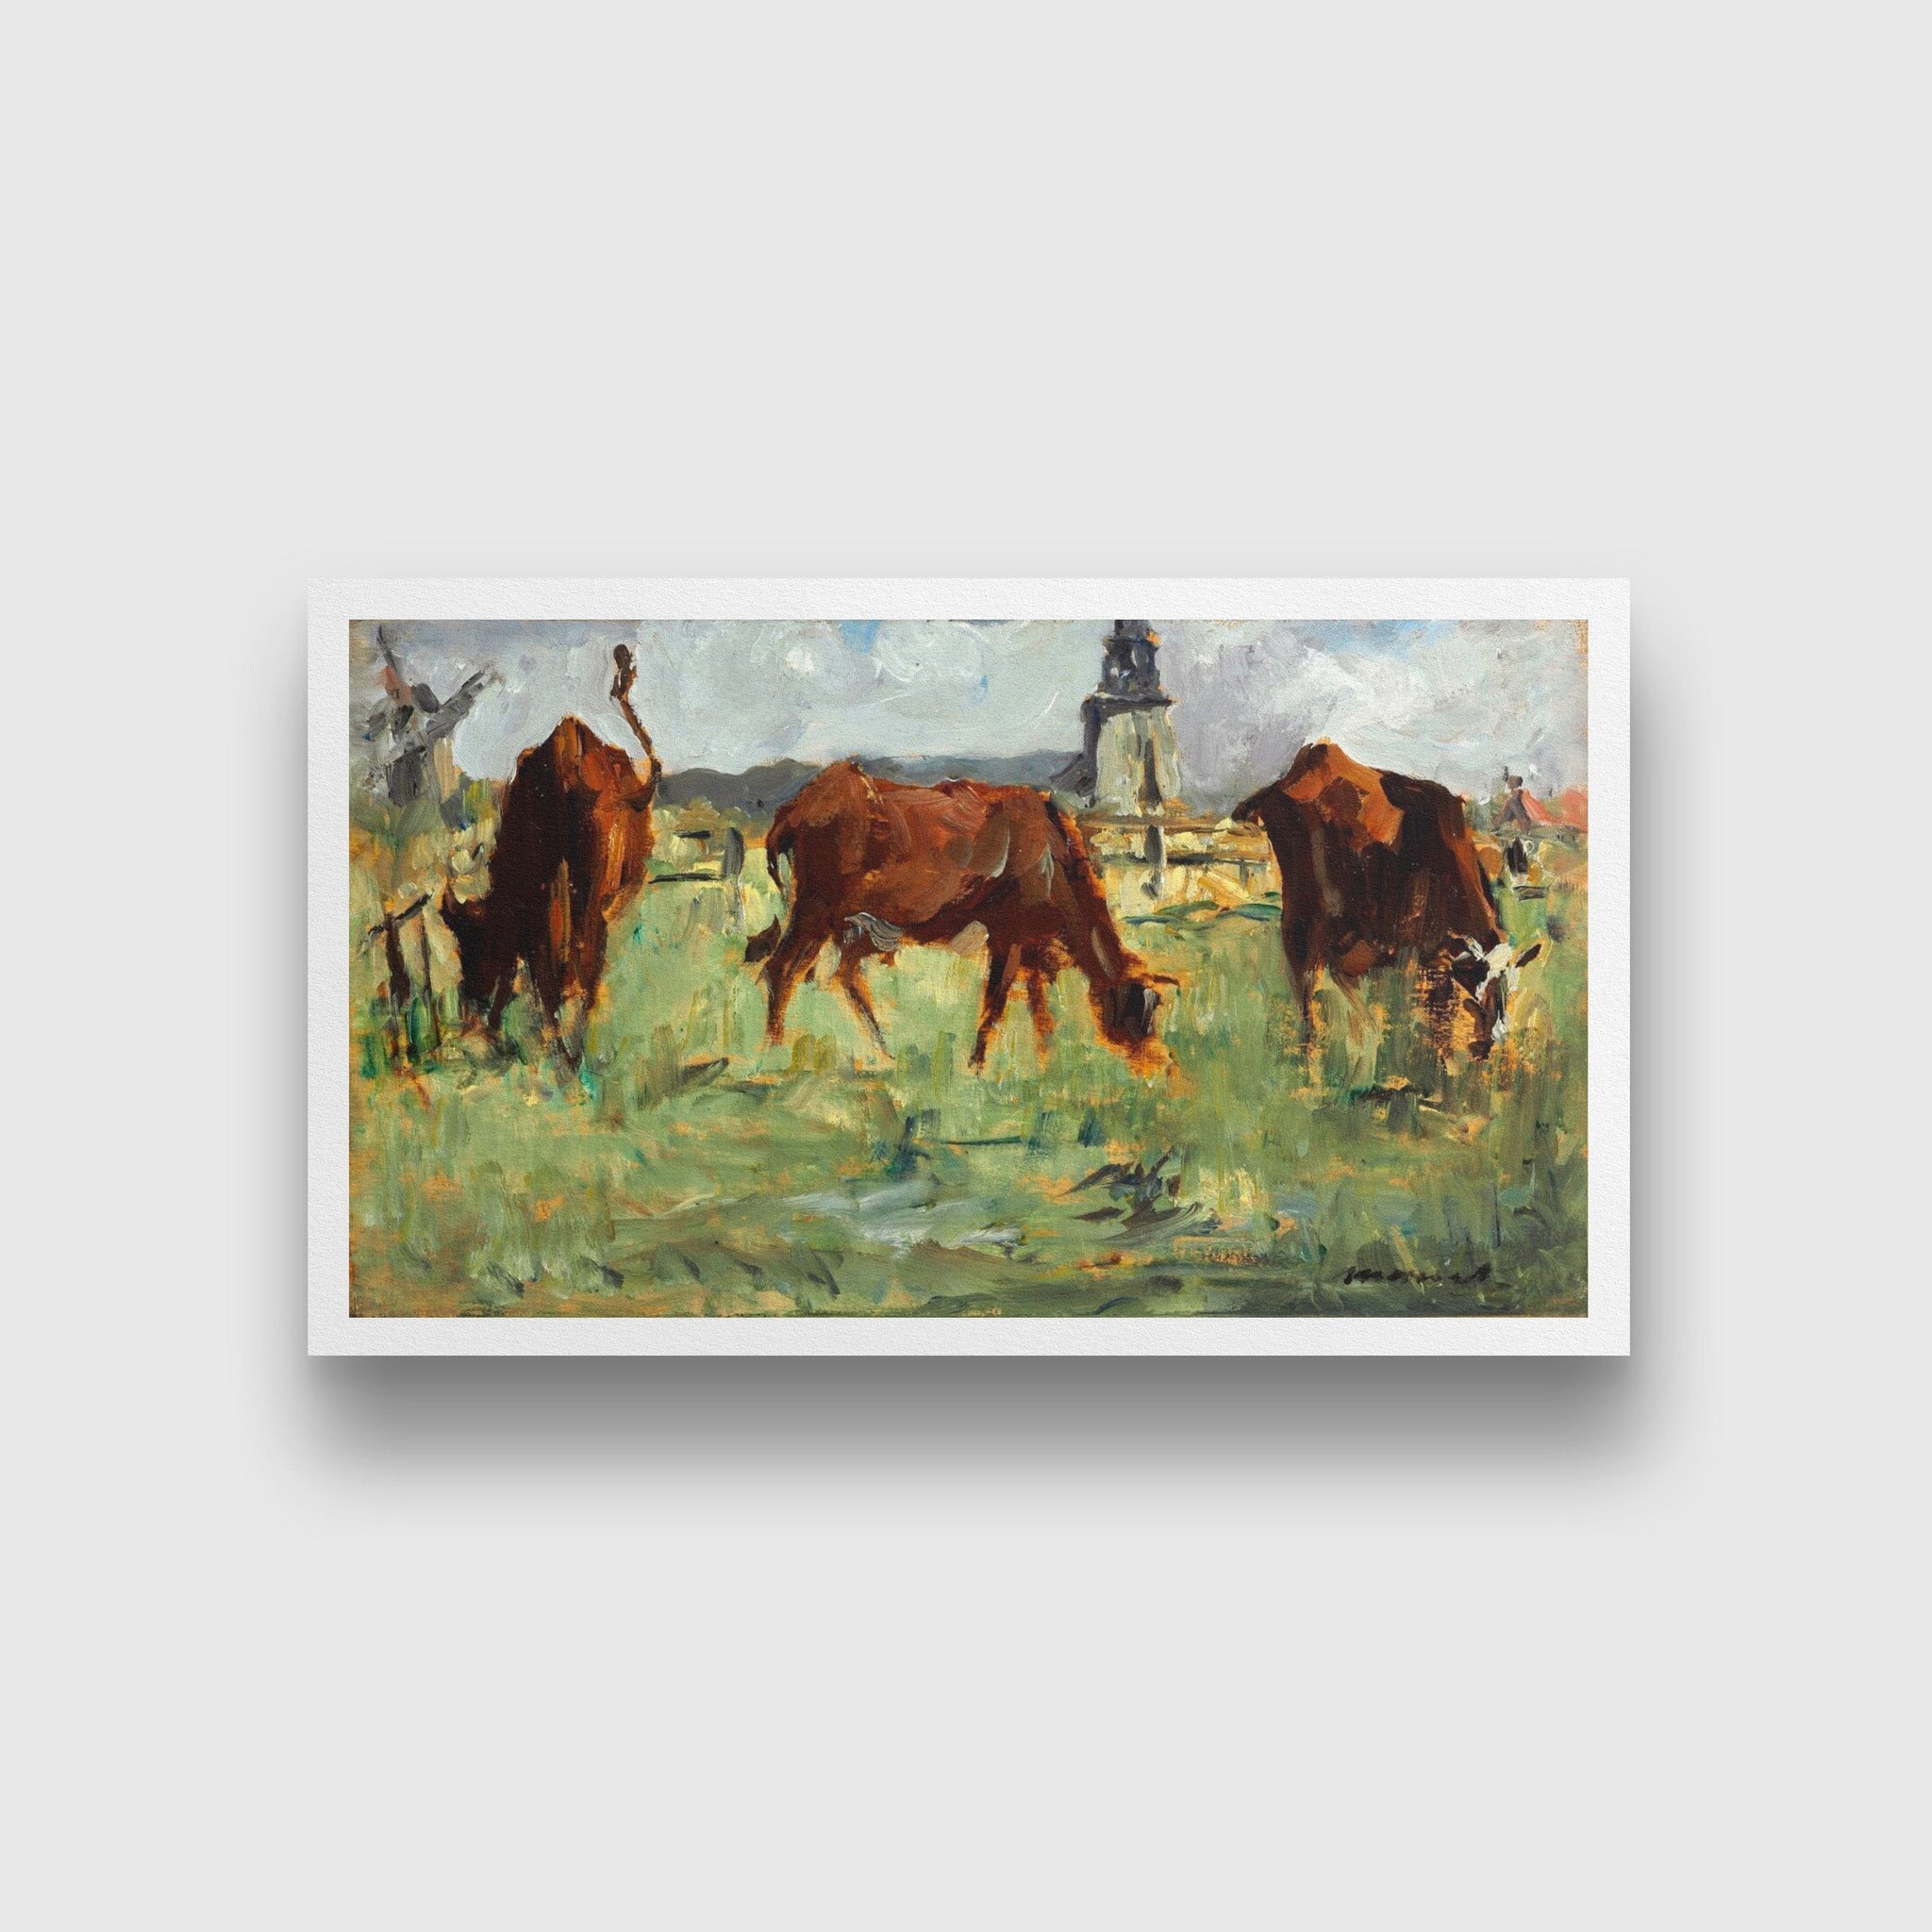 Cows In Pasture Painting - Meri Deewar